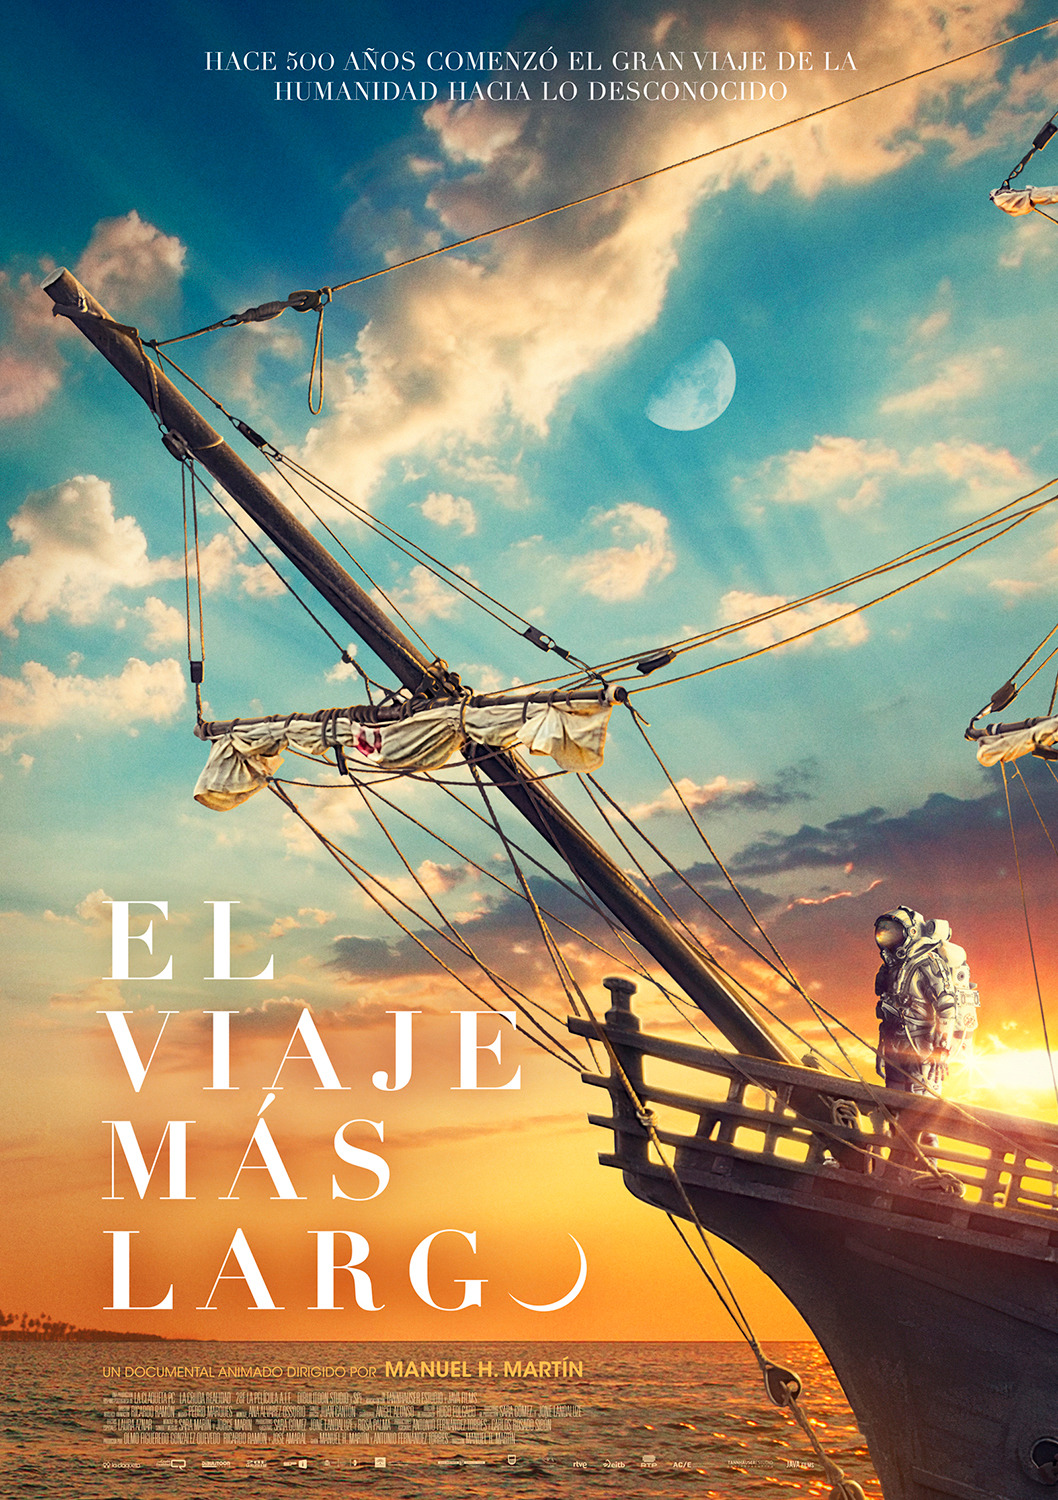 Extra Large Movie Poster Image for El viaje más largo (#1 of 2)